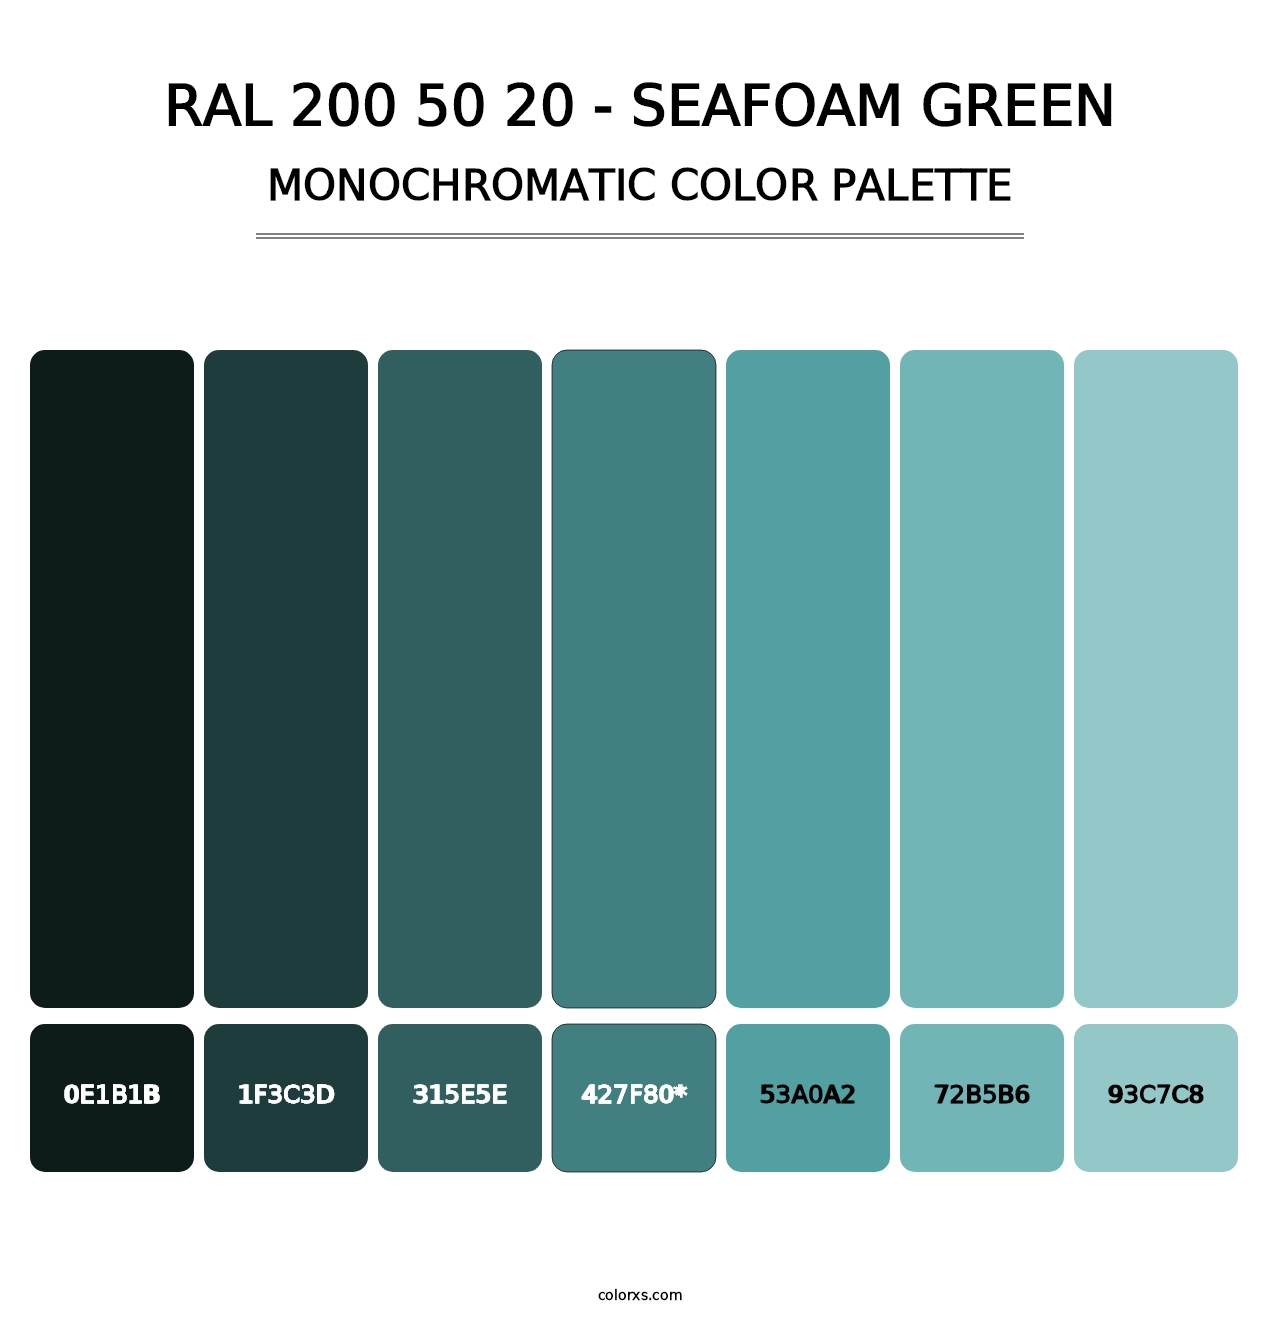 RAL 200 50 20 - Seafoam Green - Monochromatic Color Palette